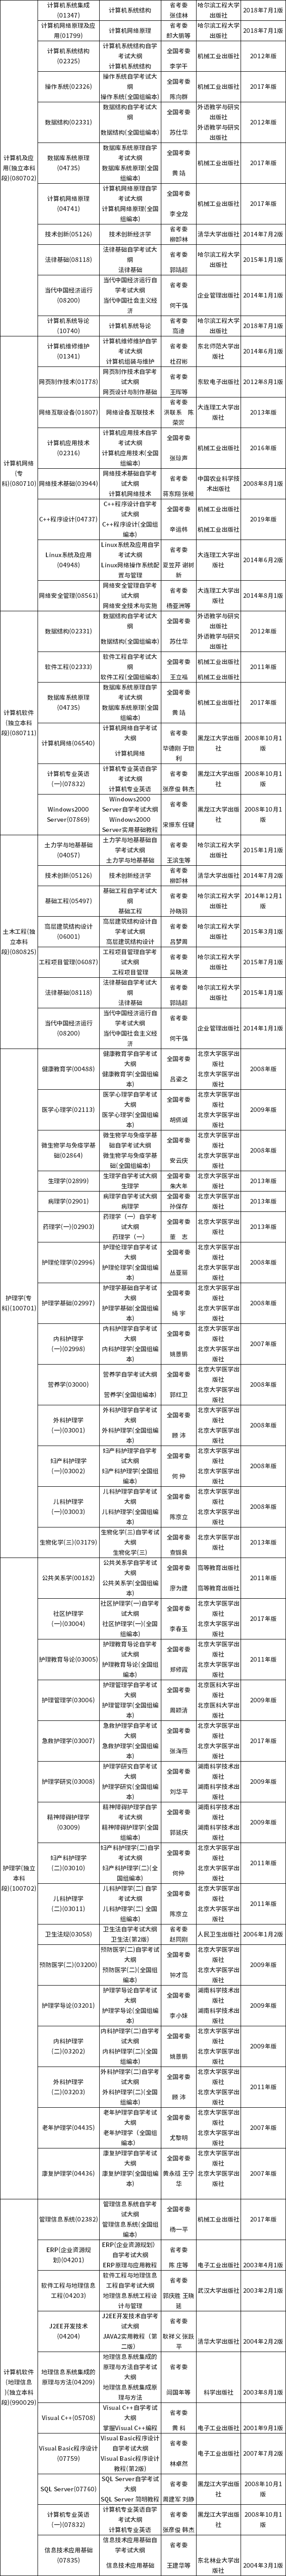 黑龙江省2021年4月高等教育自学考试大纲和教材目录